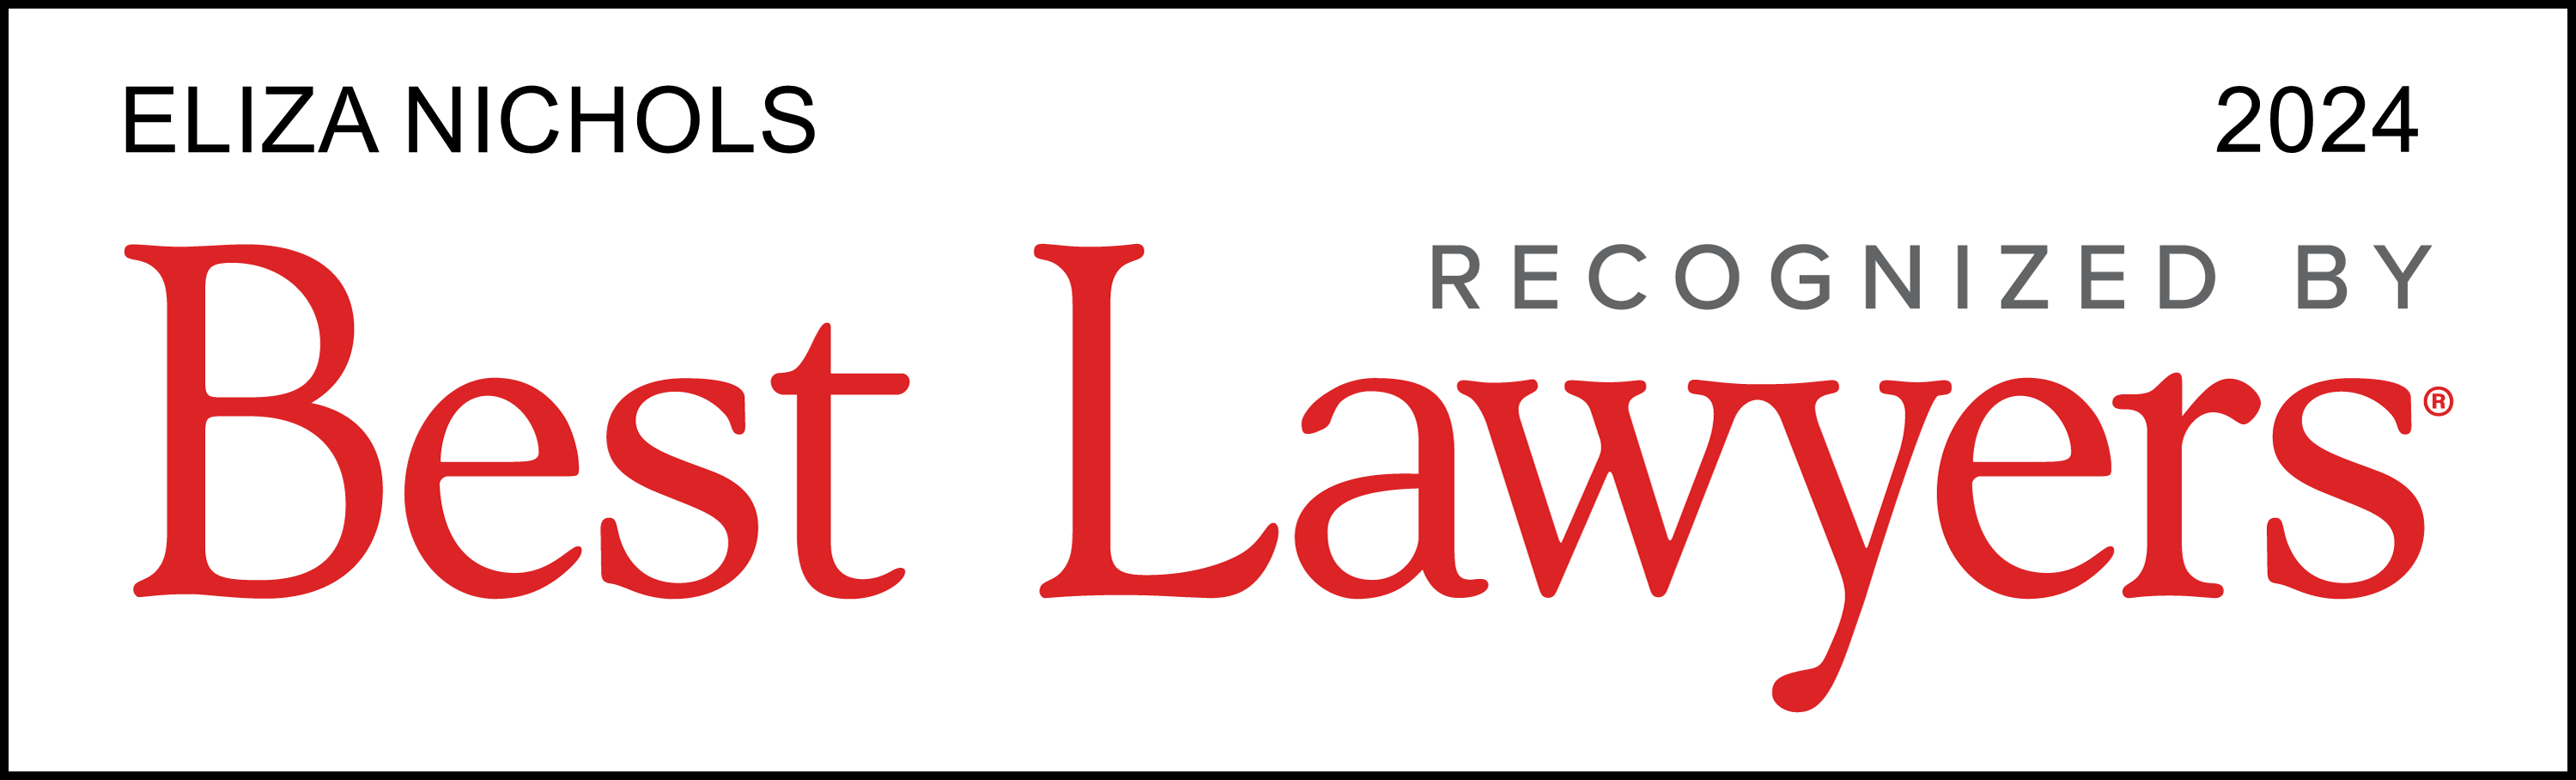 best-lawyers-lawyer-logo-emn